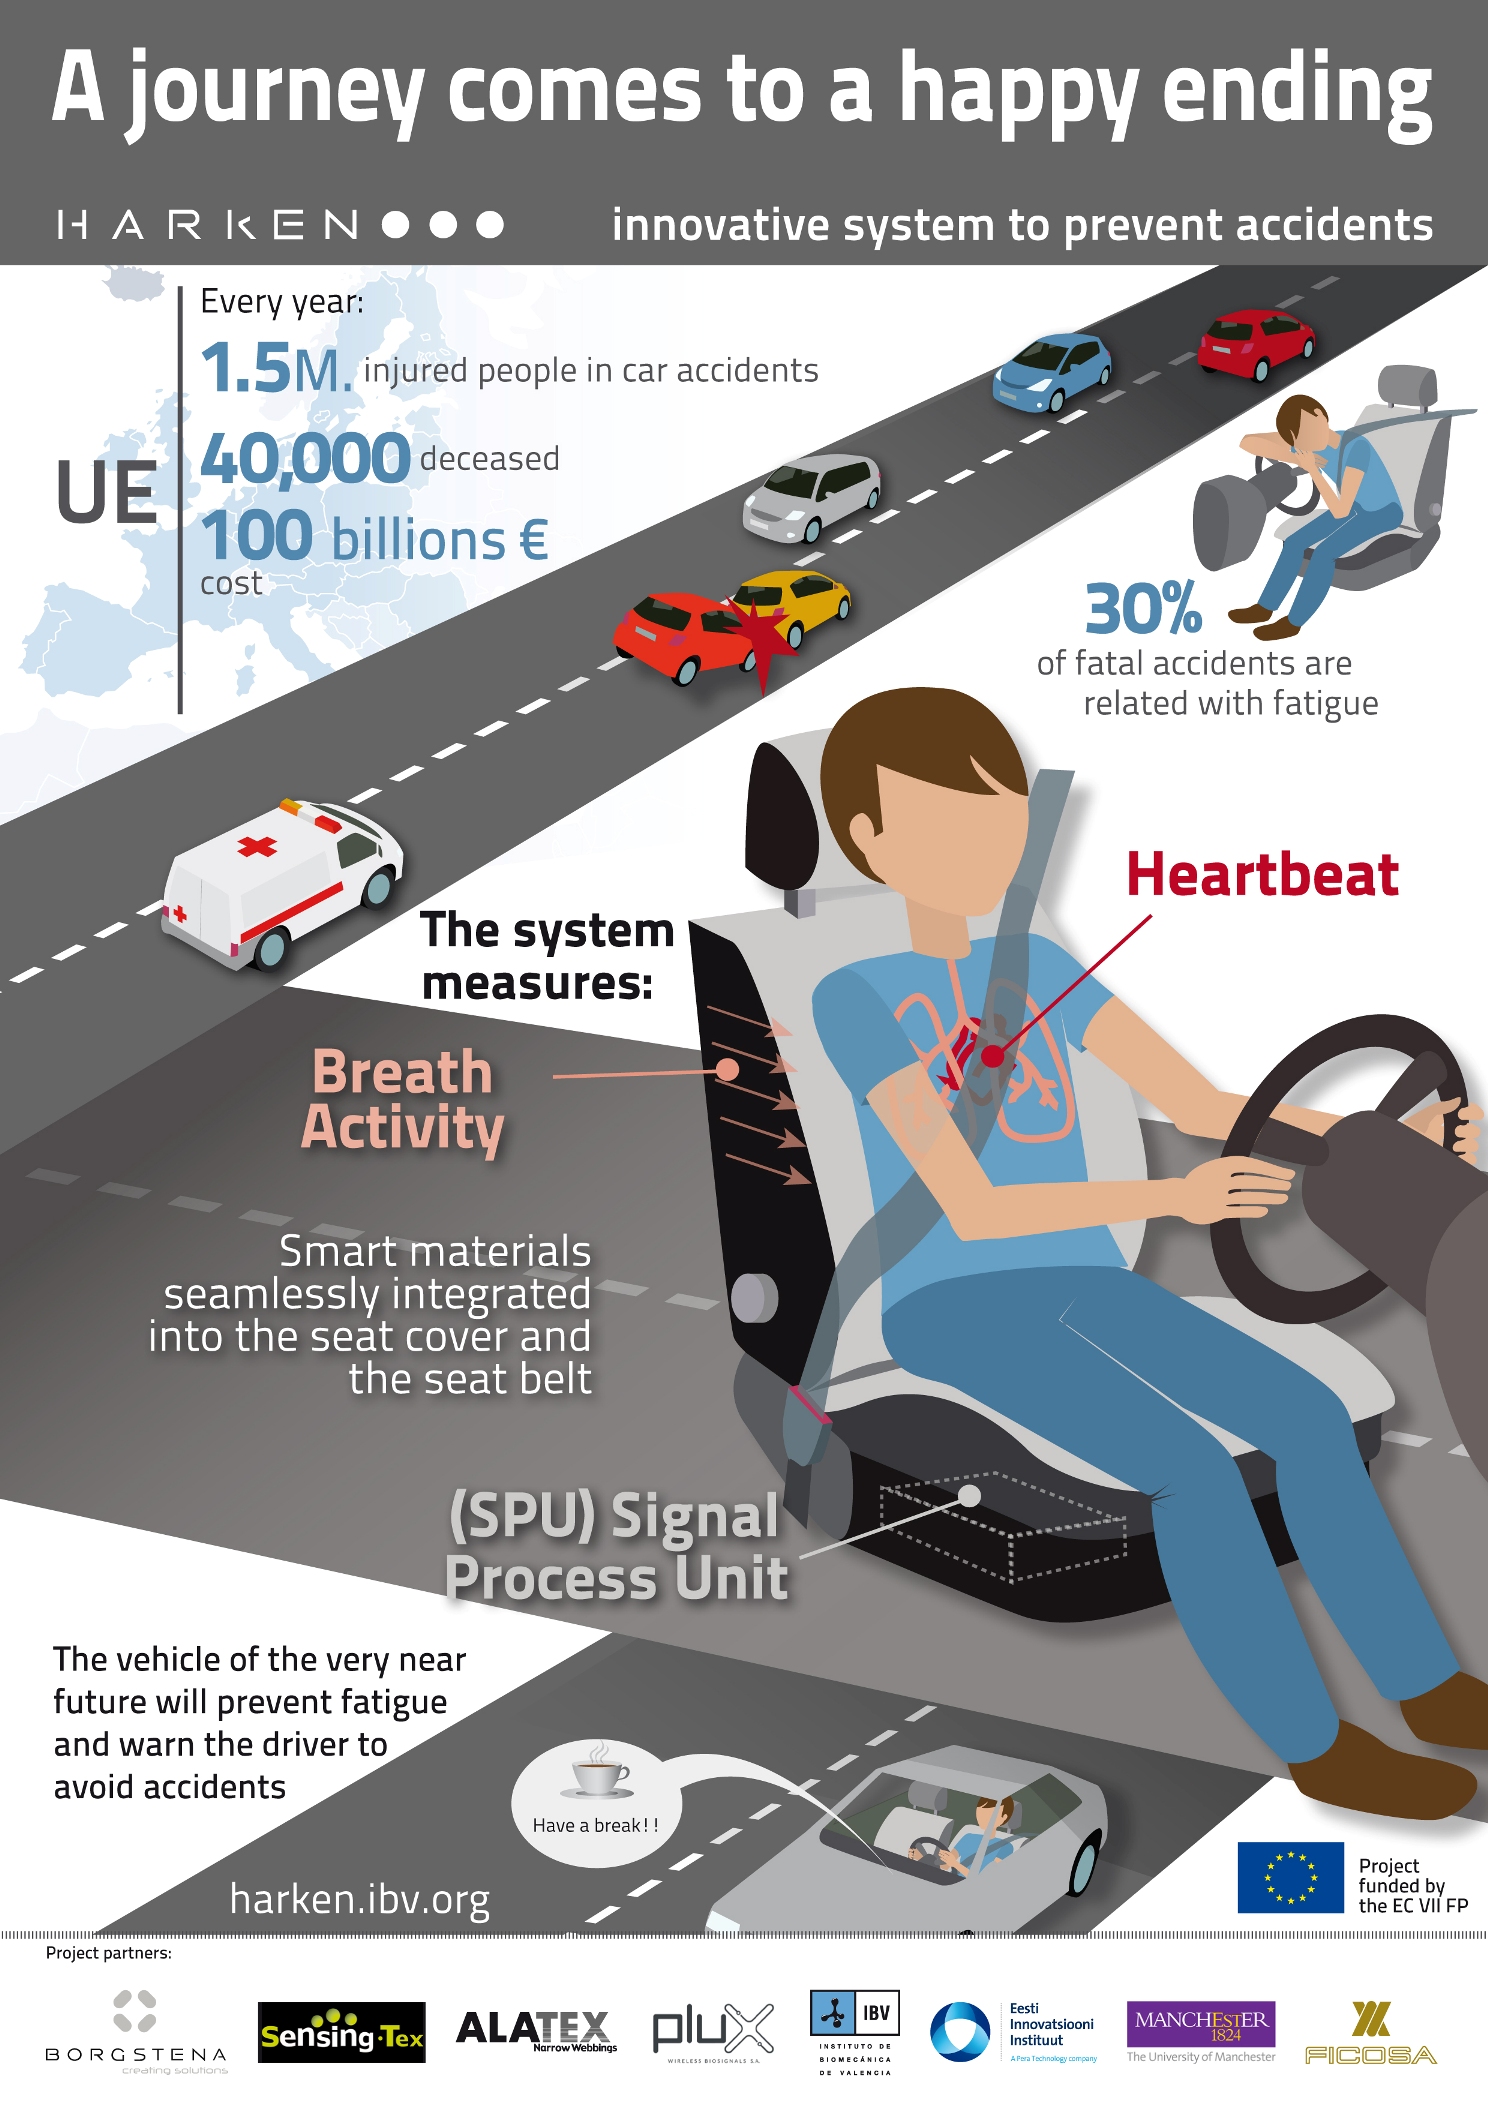 Sensor seatbelt detects fatigue